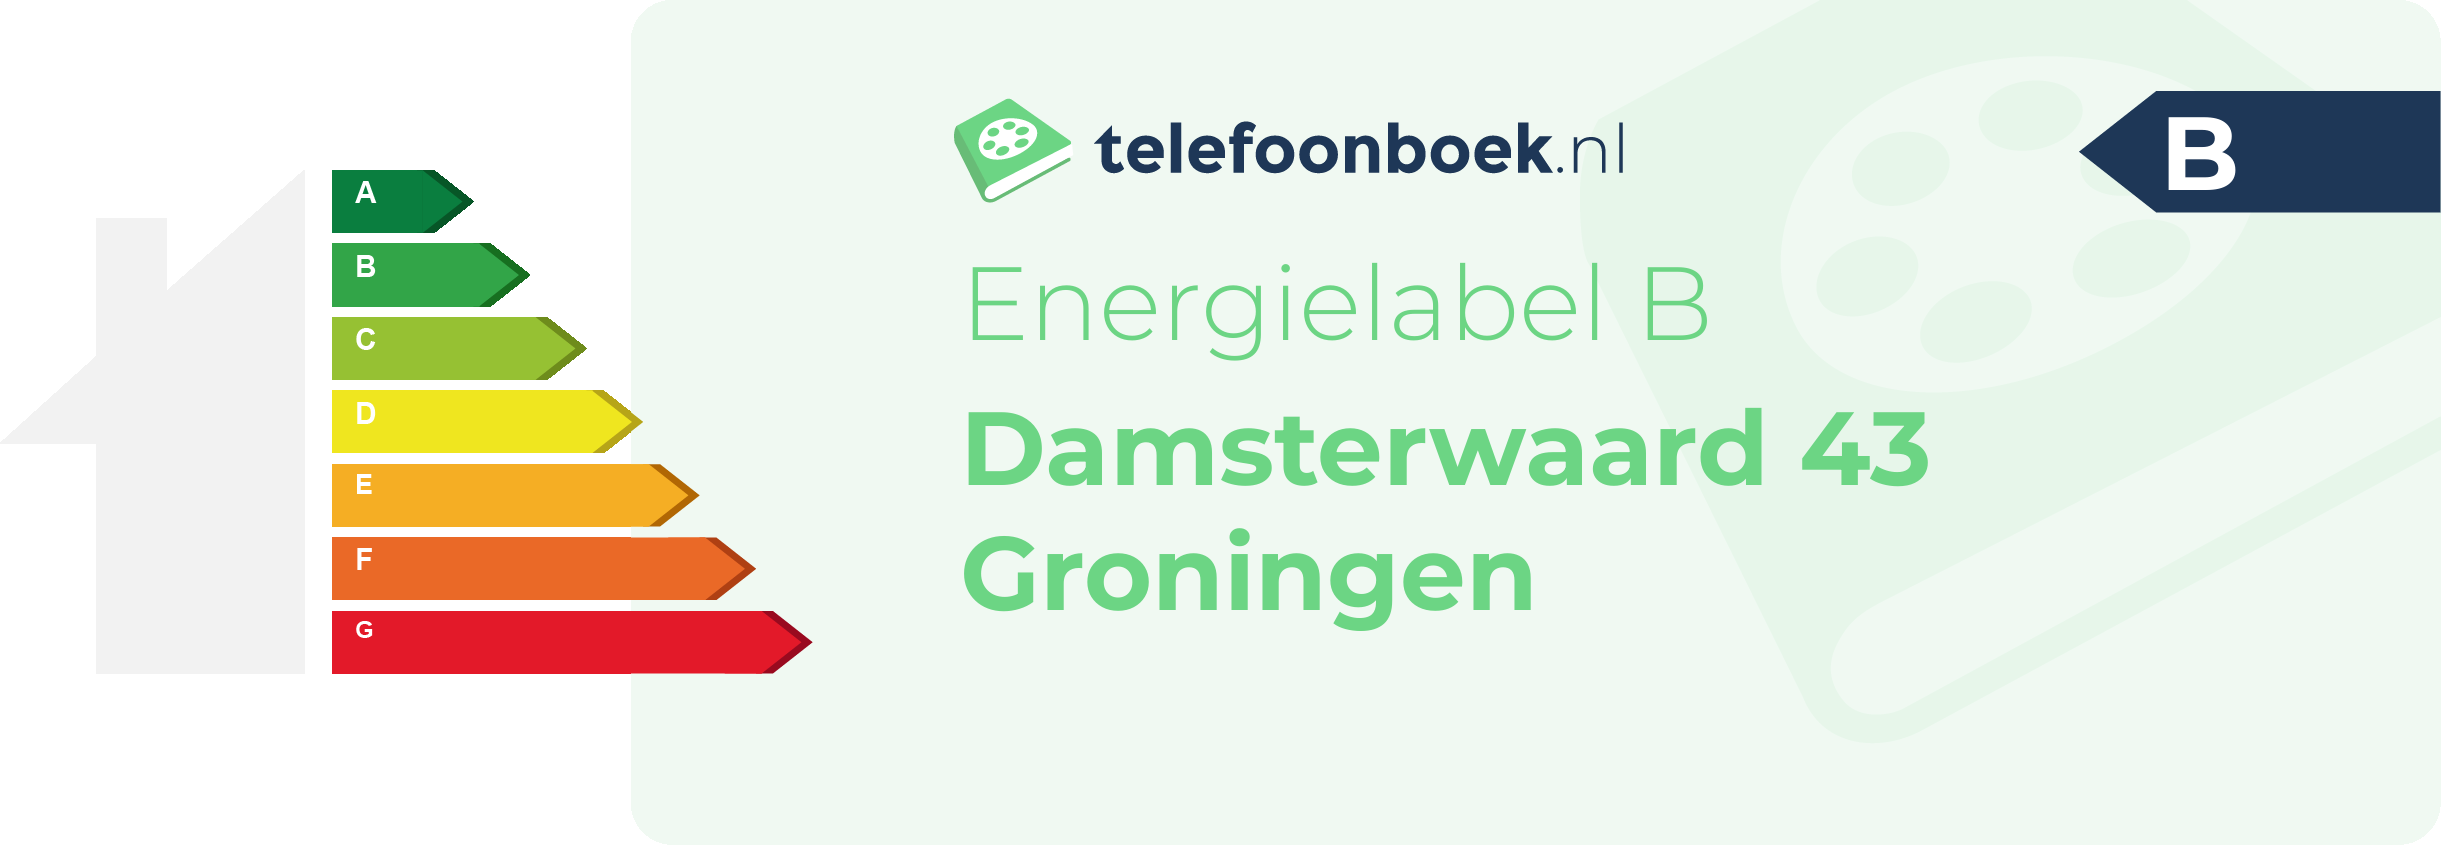 Energielabel Damsterwaard 43 Groningen